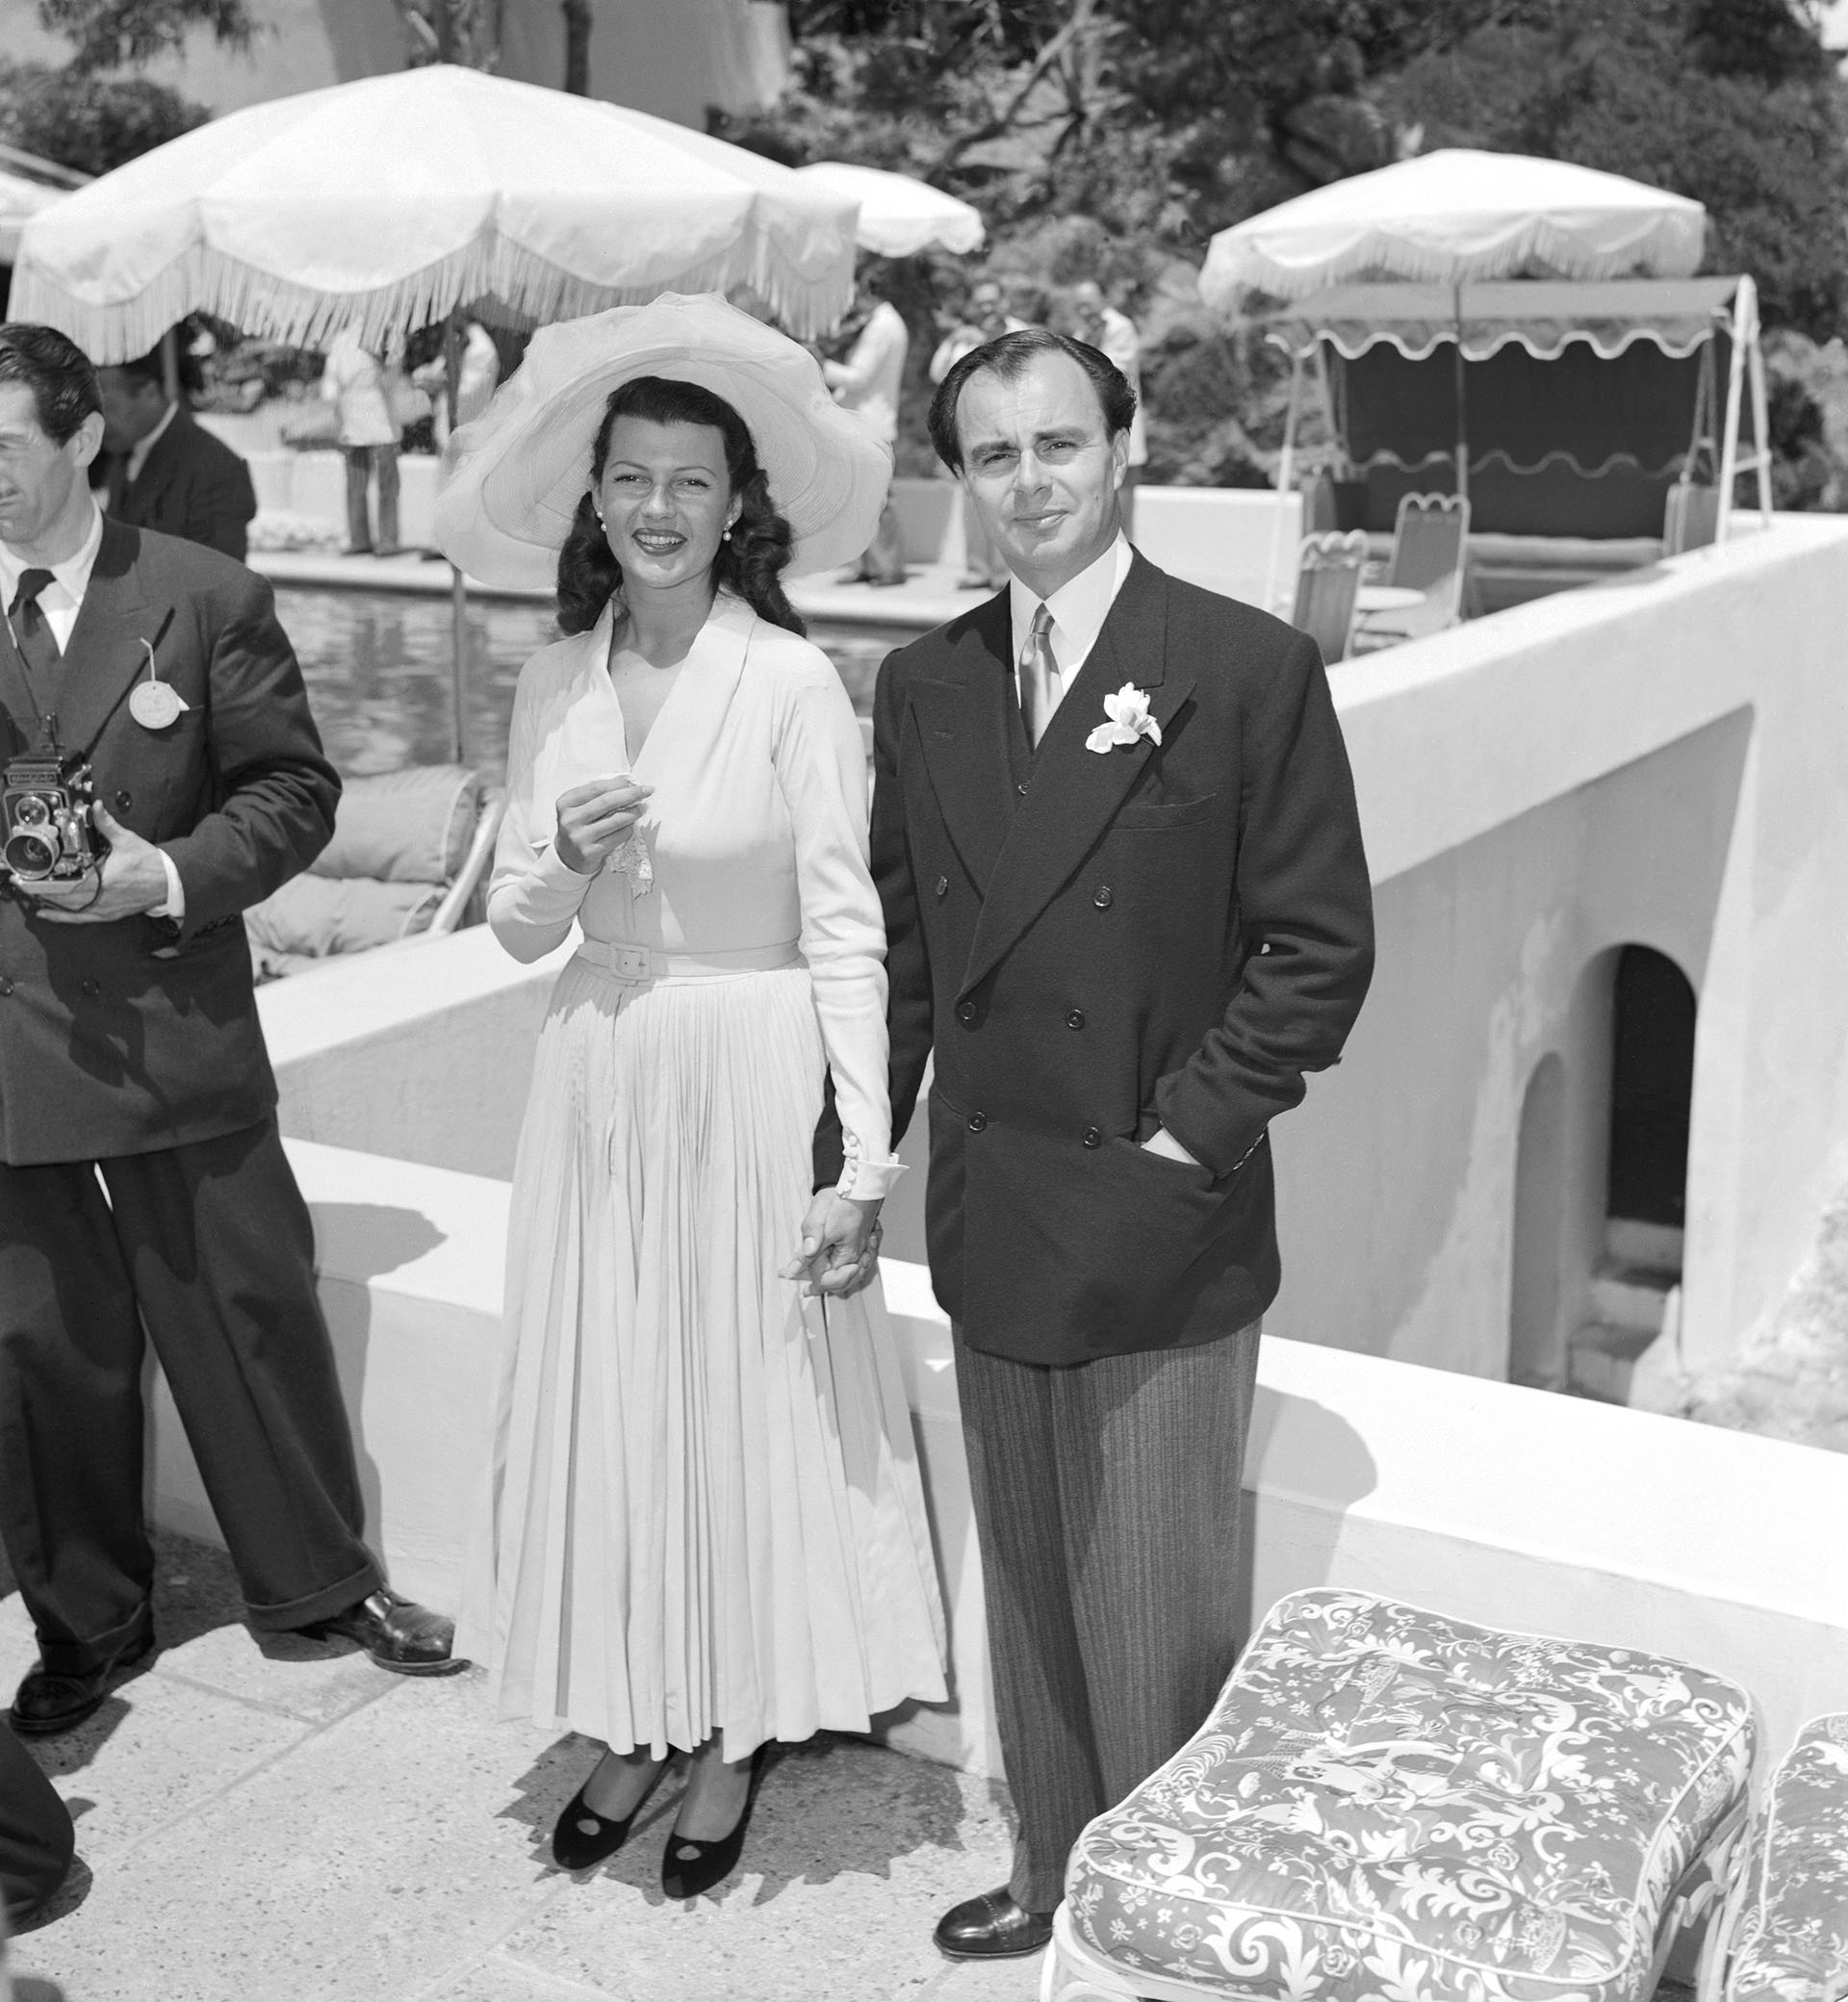 Rita Hatworth y el príncipe Ali Khan el día de su boda en la Riveria francesa (Bettmann Archive)
